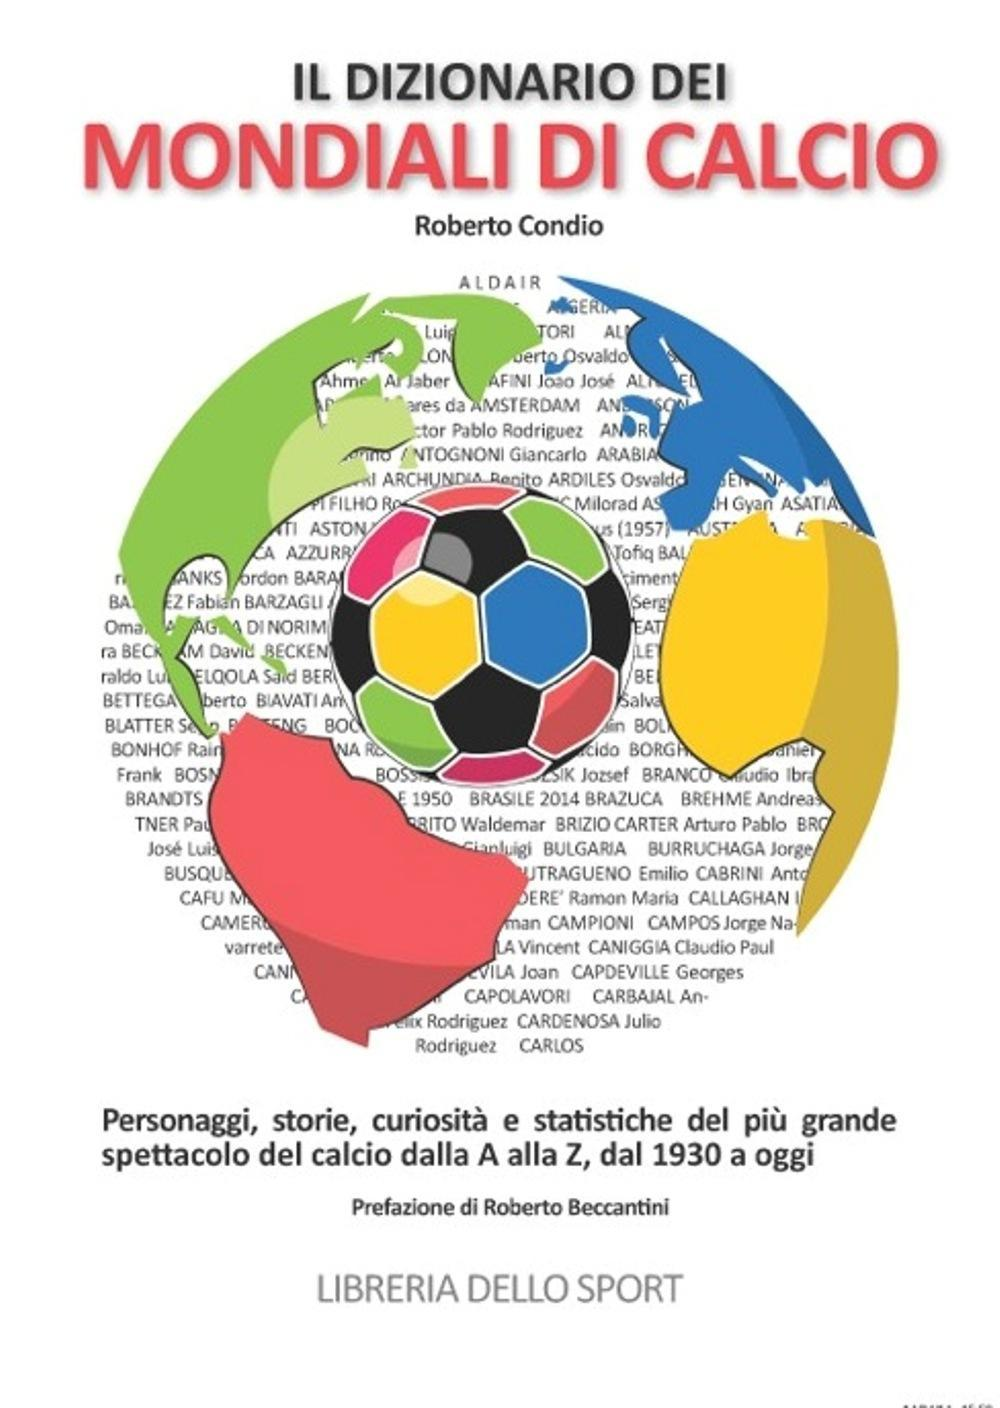 Image of Il dizionario dei mondiali di calcio. Personaggi, storie, curiosità e statistiche del più grande spettacolo del calcio dlla A alla Z, dal 1930 ad oggi